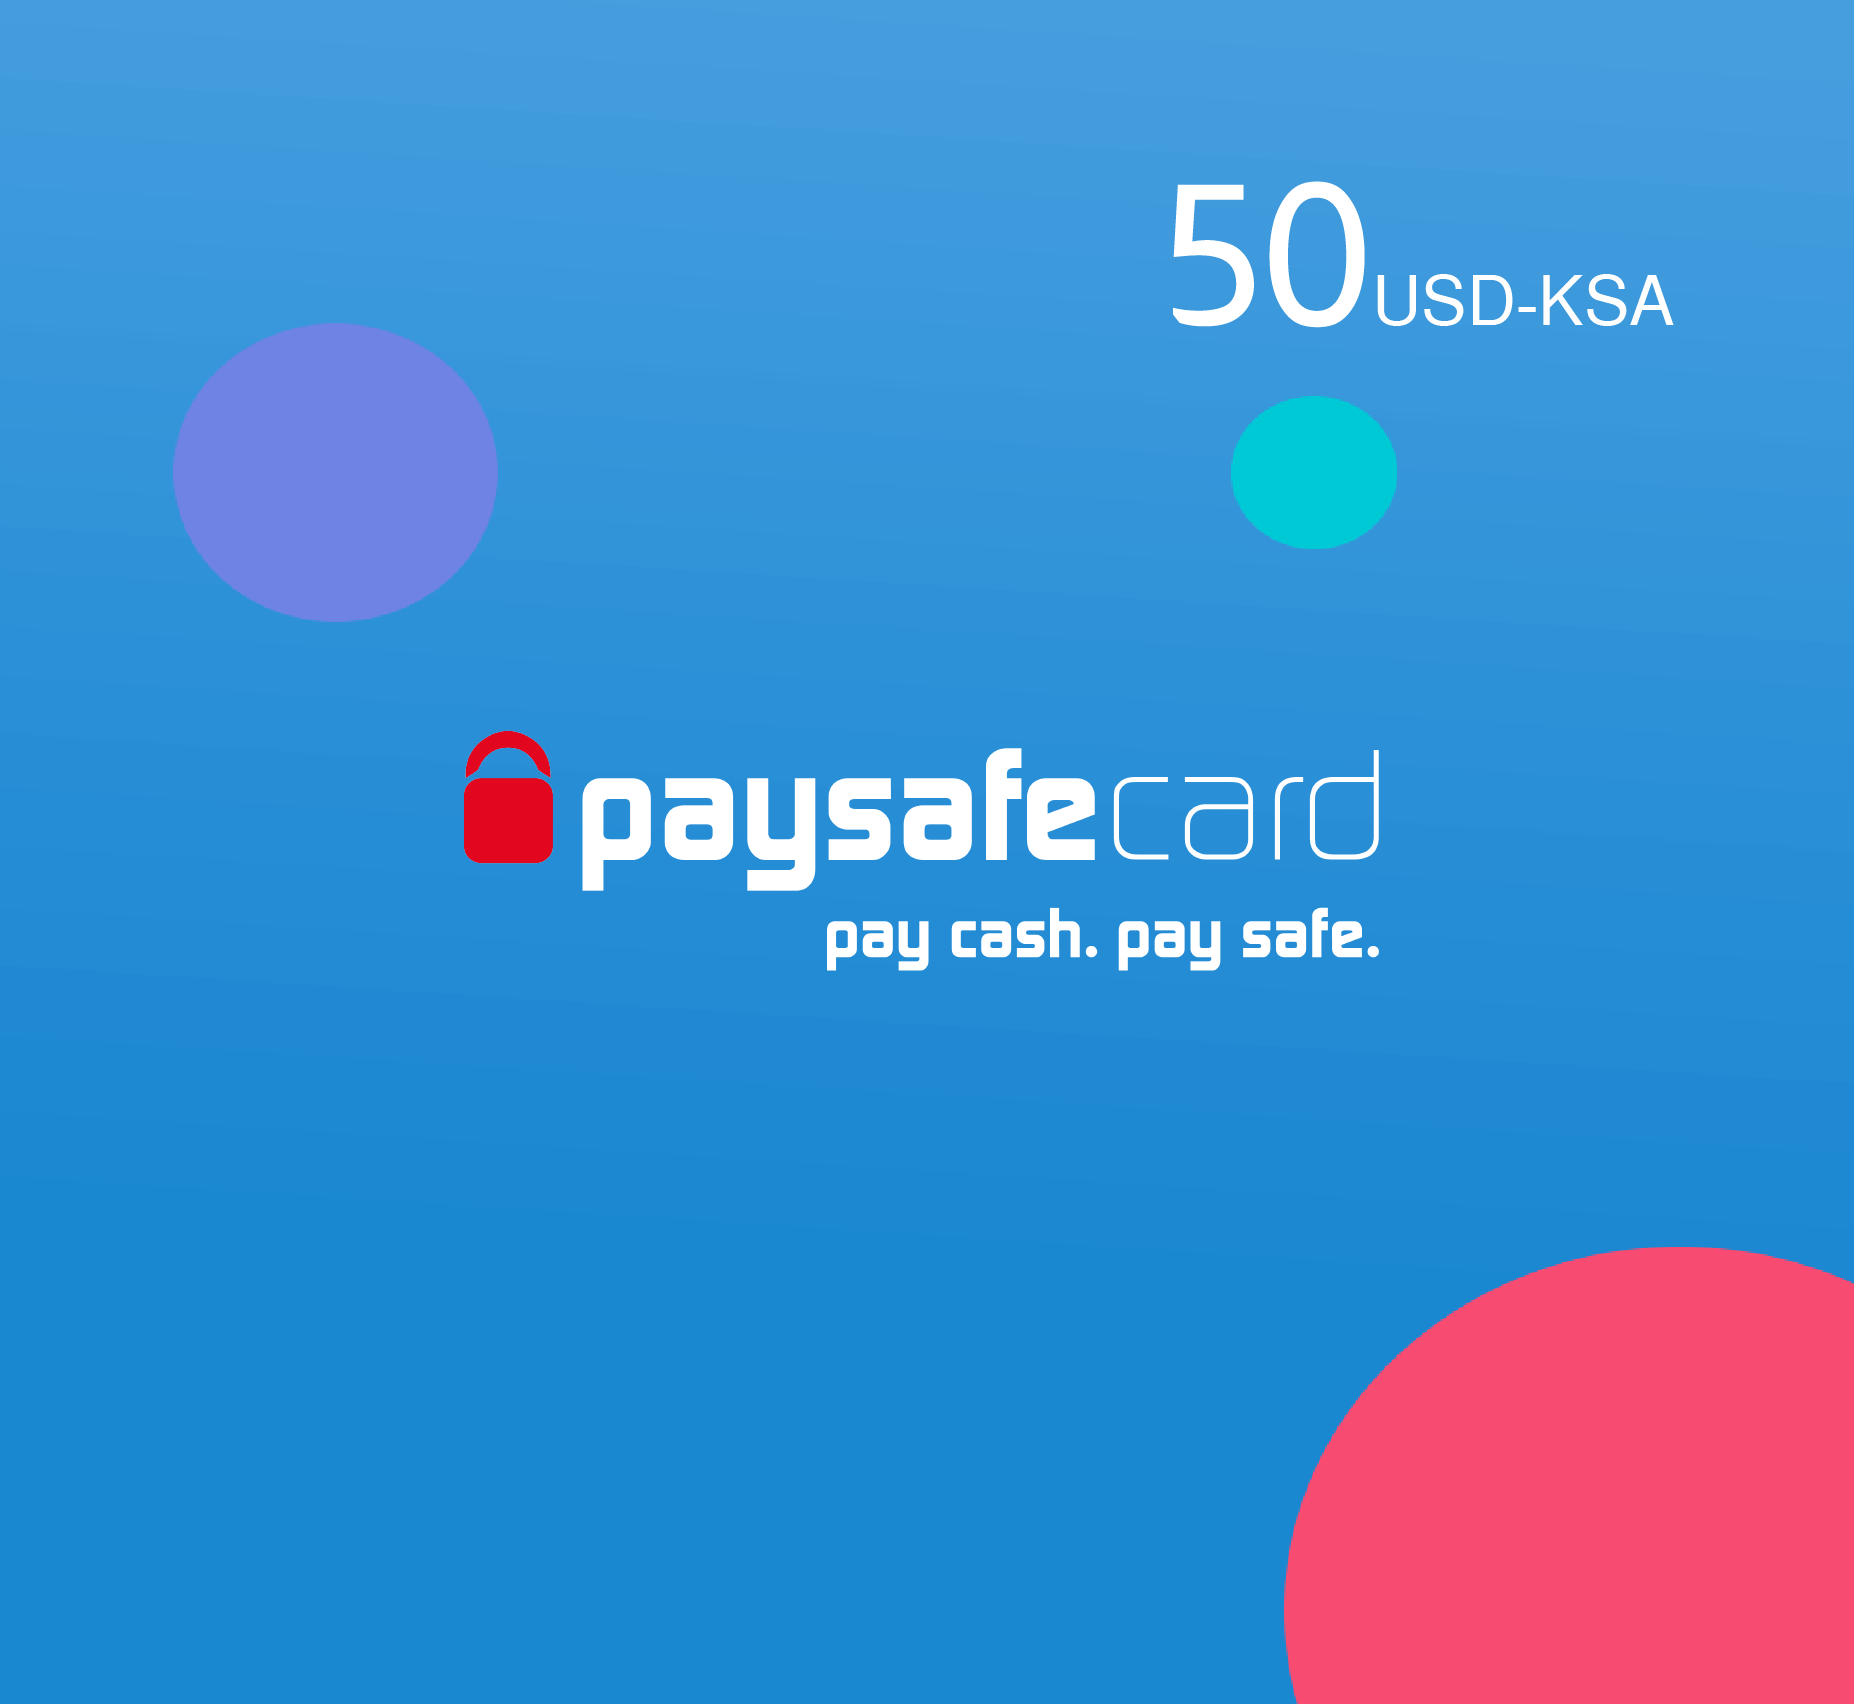 Paysafe card 50 USD - KSA